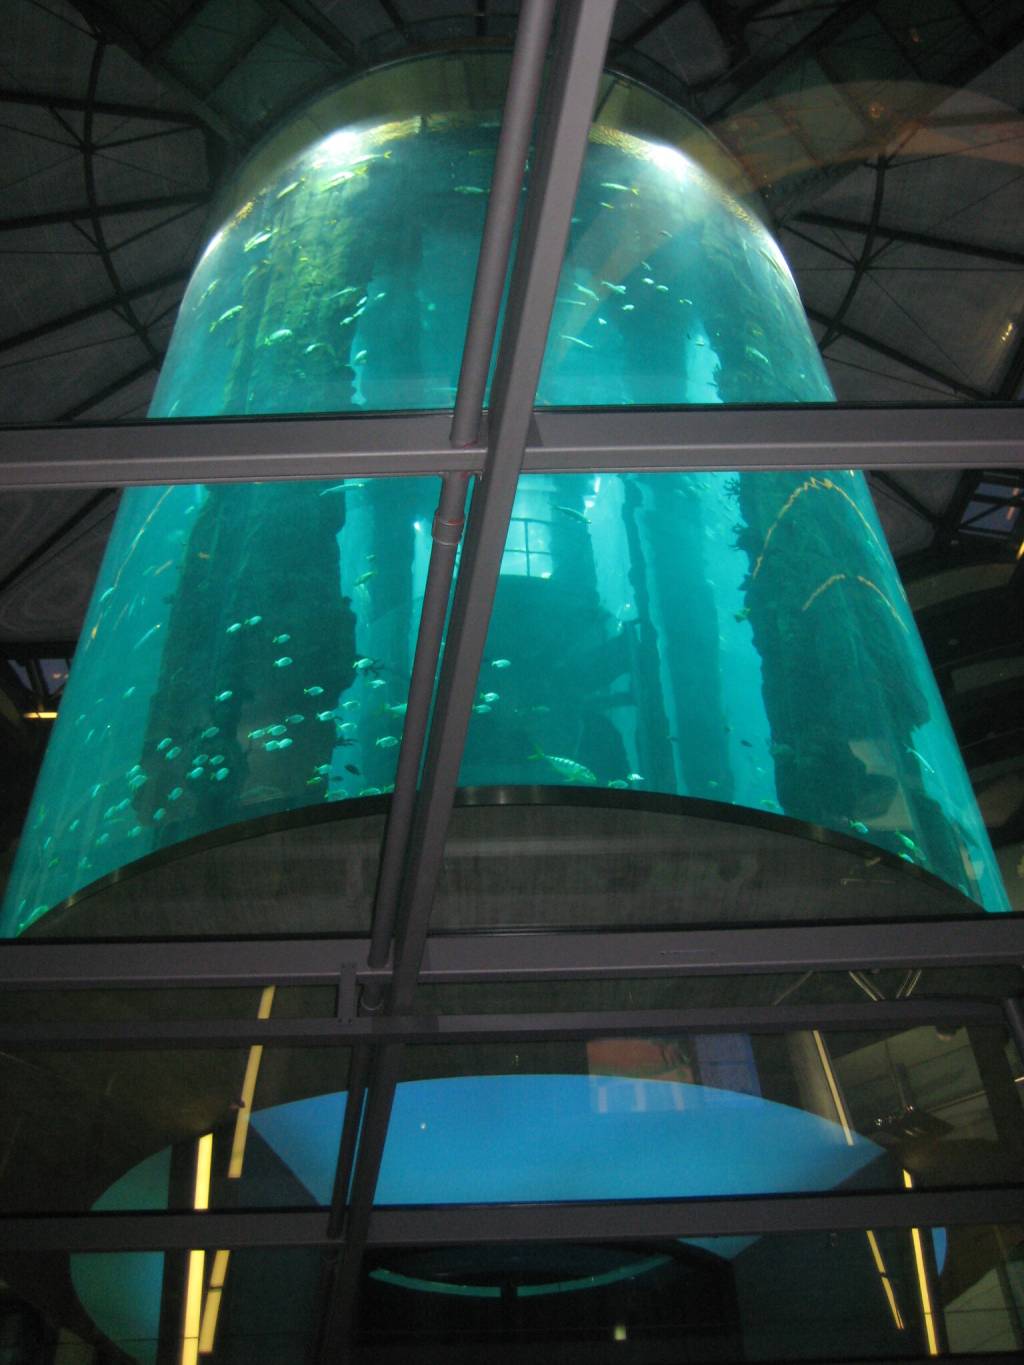 Foto do aquário de 14 metros antes da explosão